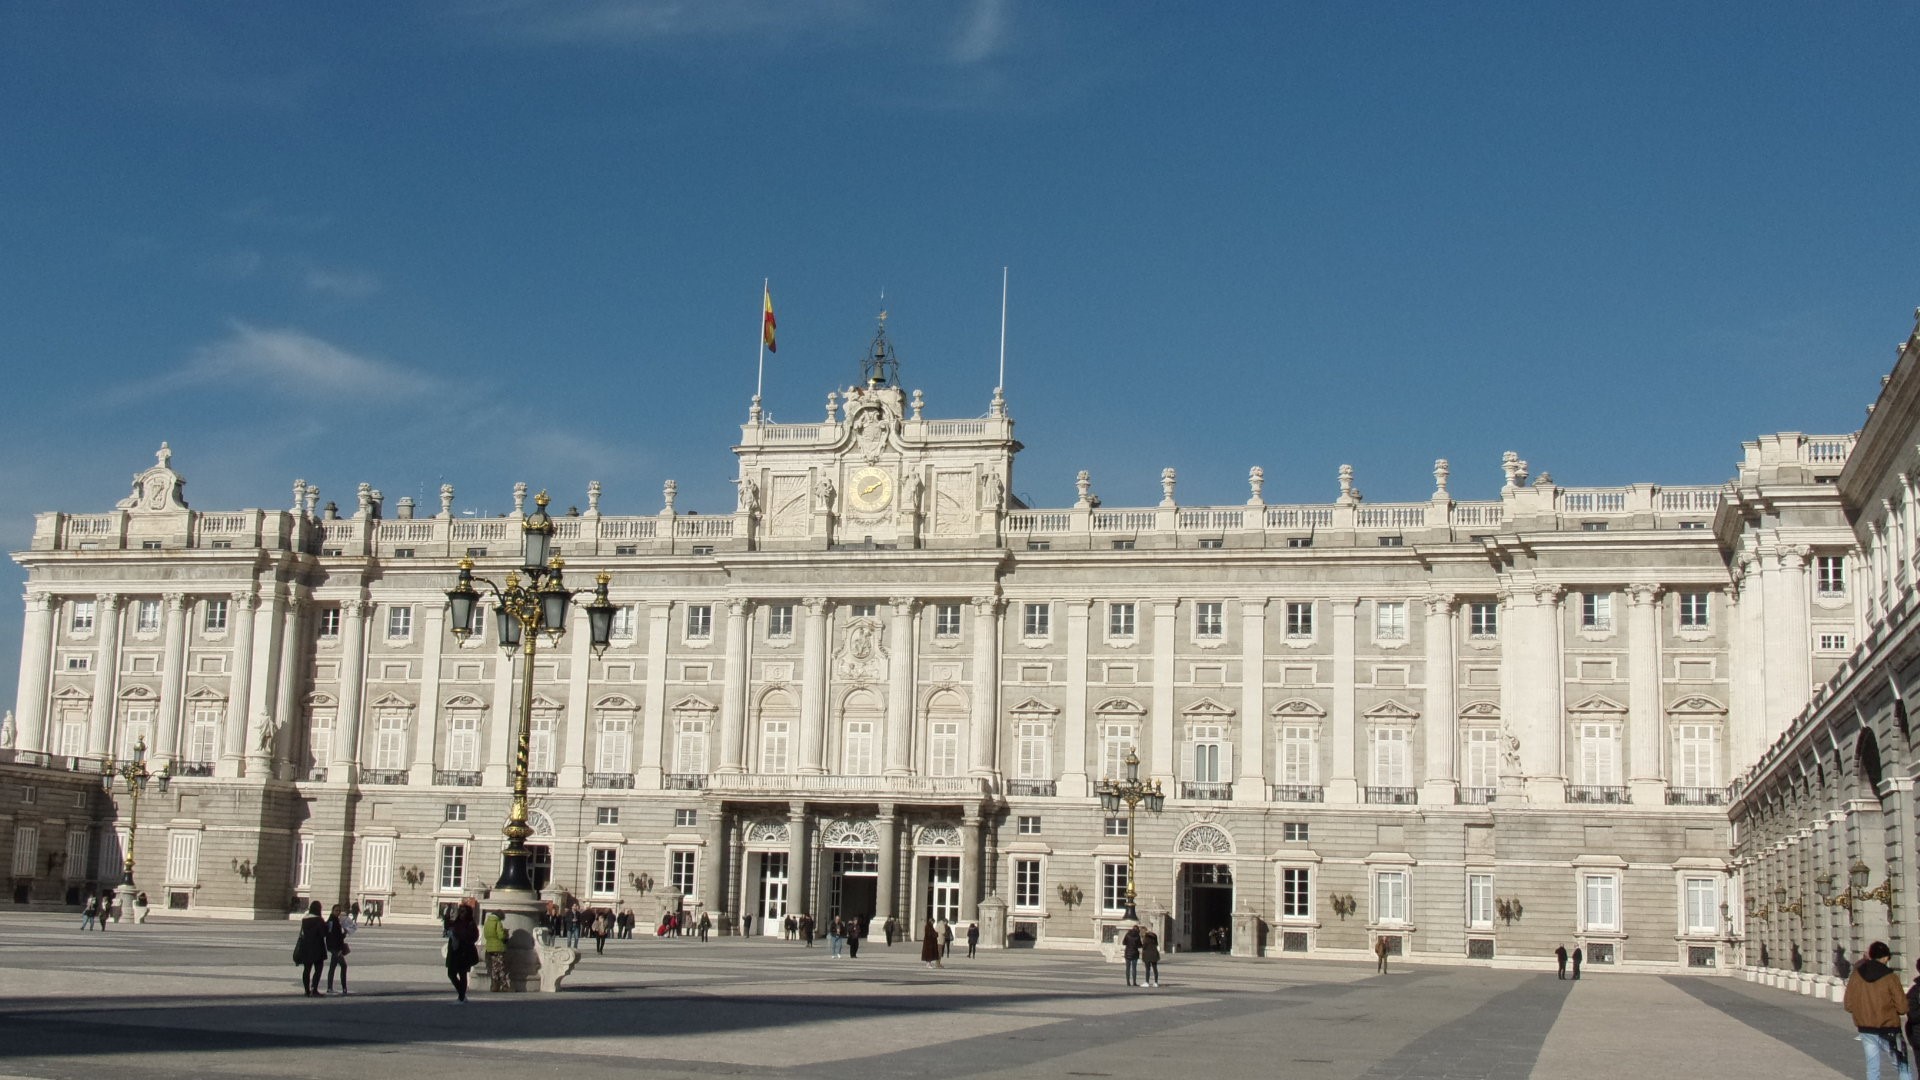 Королевский дворец в Мадриде. самый большой королевский дворец в Европе, в нем насчитывается около 9 тысяч комнат!